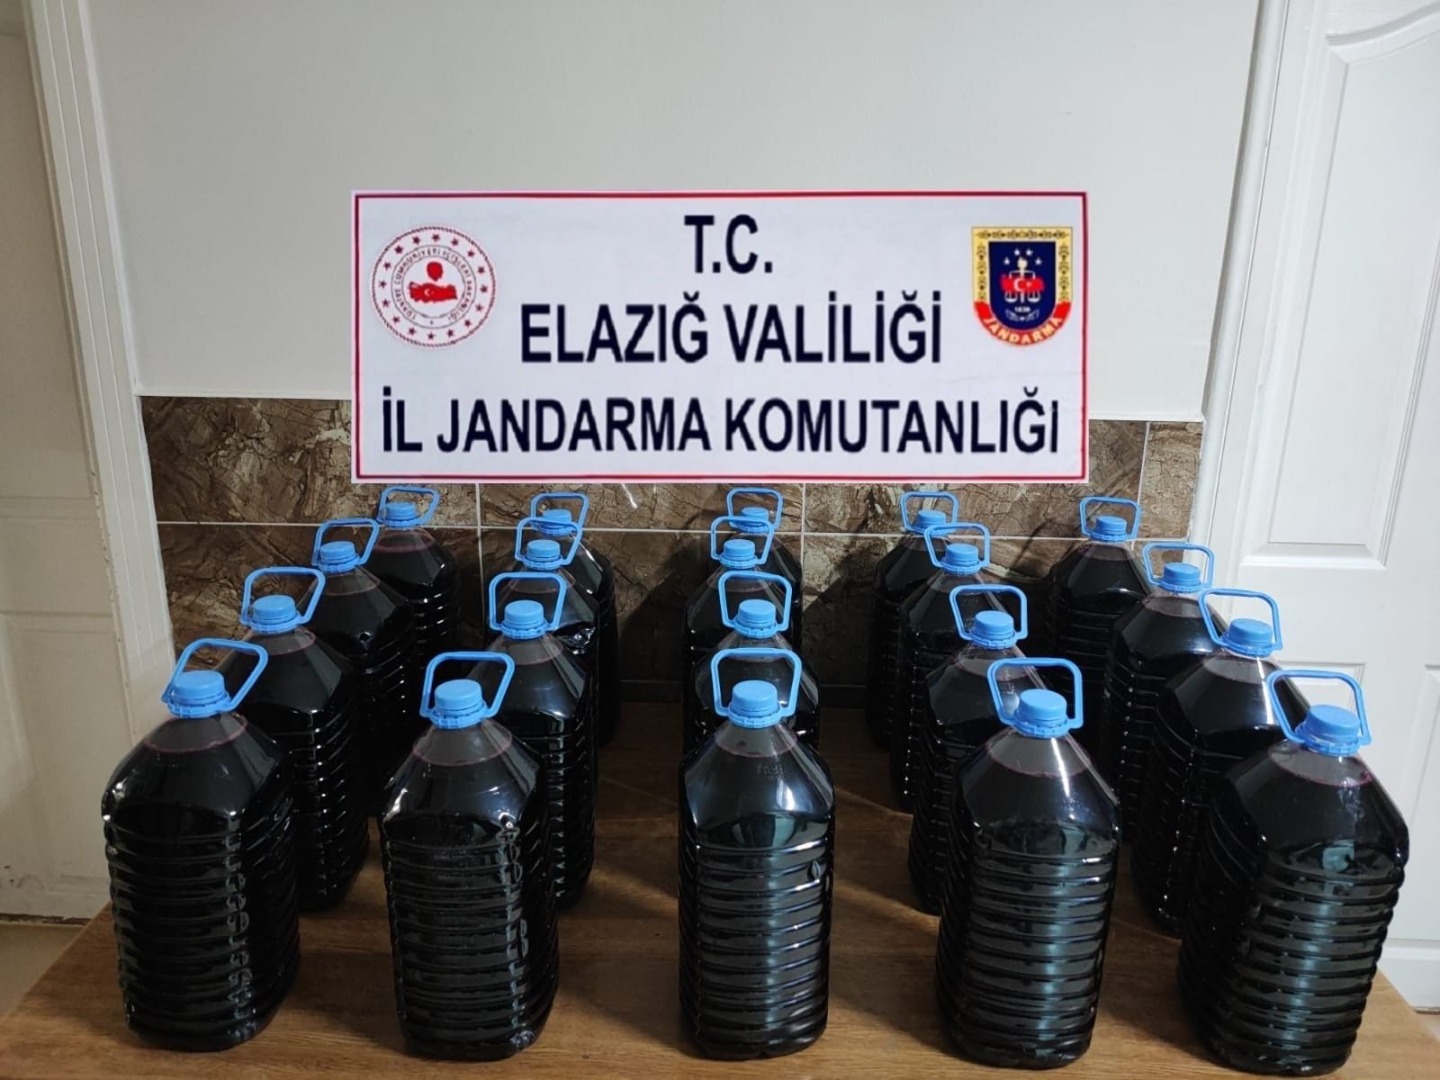 Elazığ’da kaçak içki operasyonu: 100 litre kaçak şarap ele geçirildi